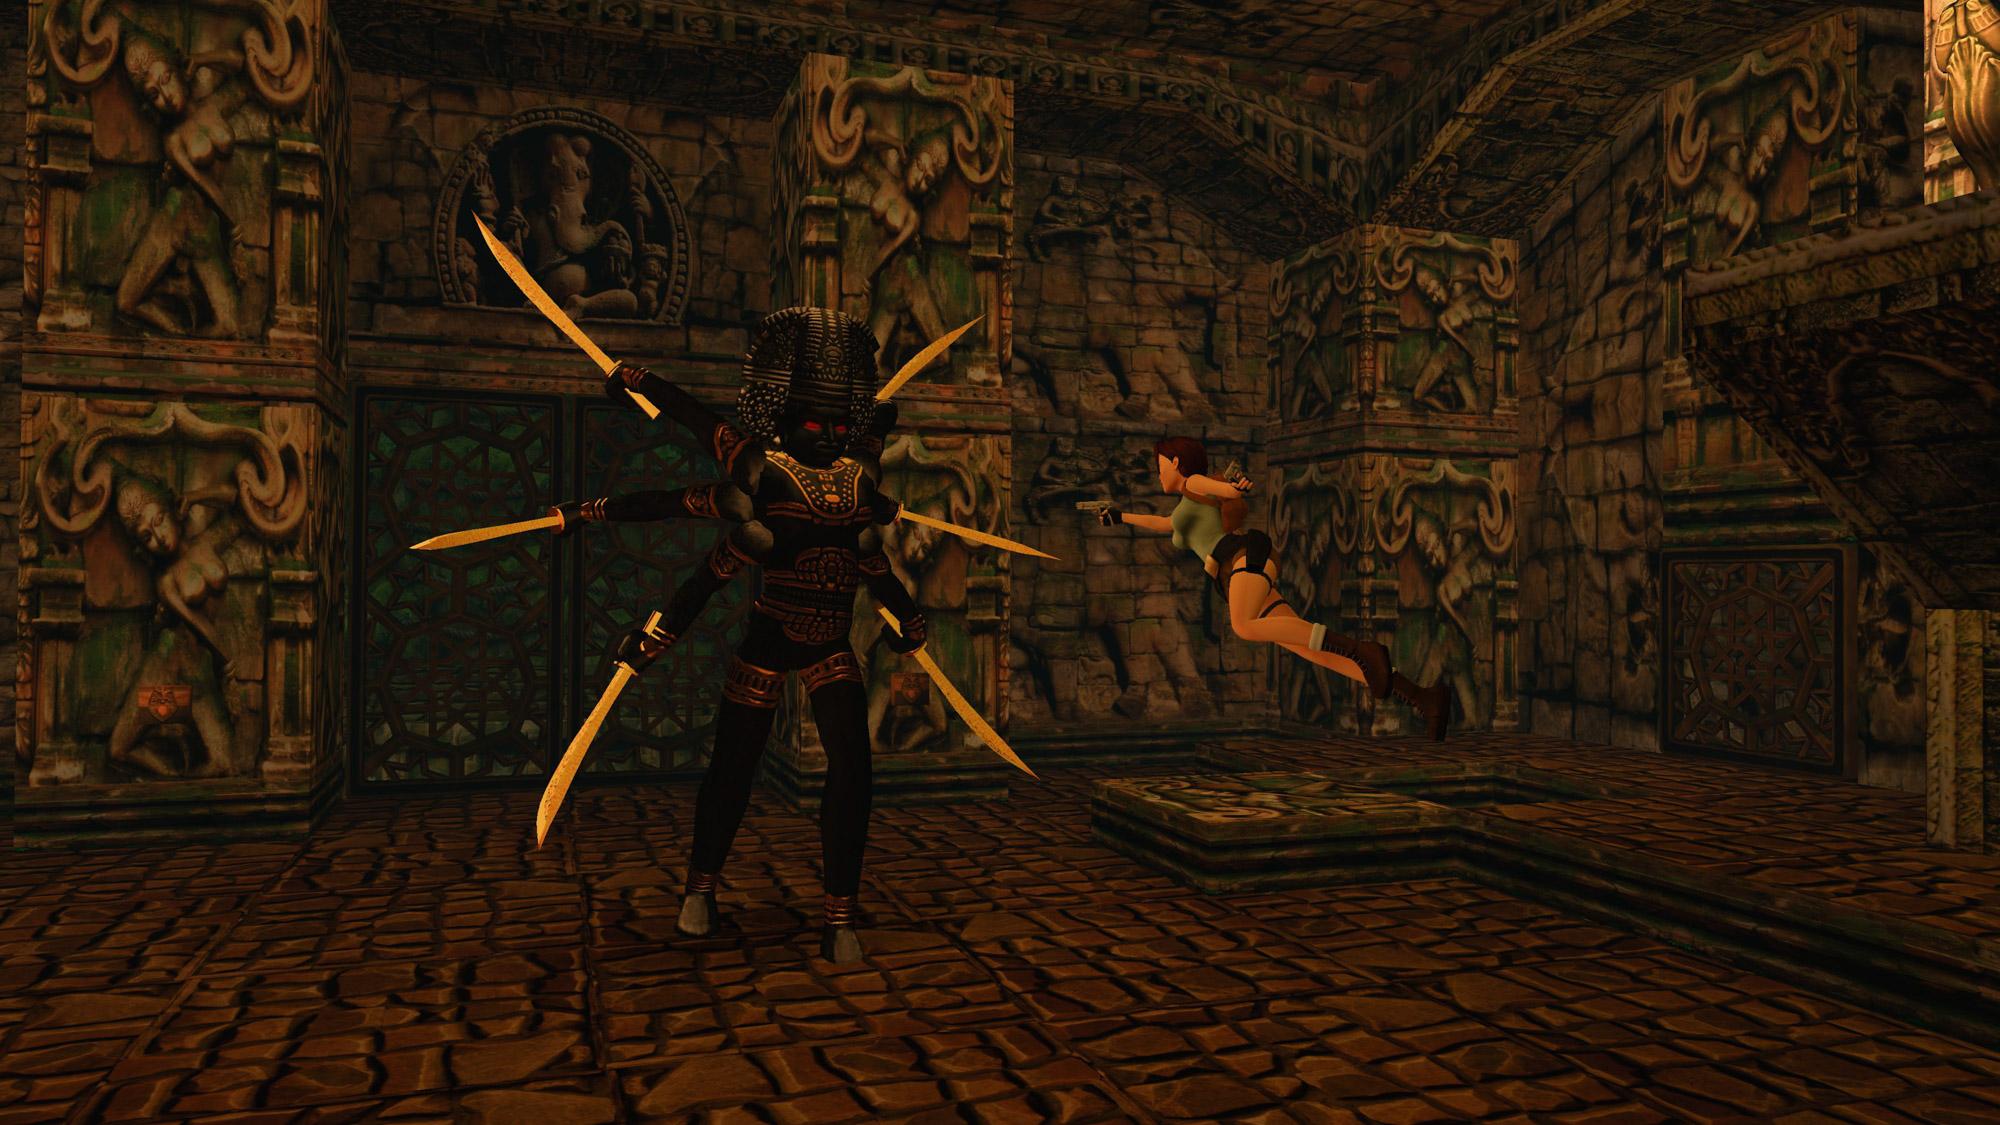 Lara Croft fighting the Shiva statue in Temple Ruins.